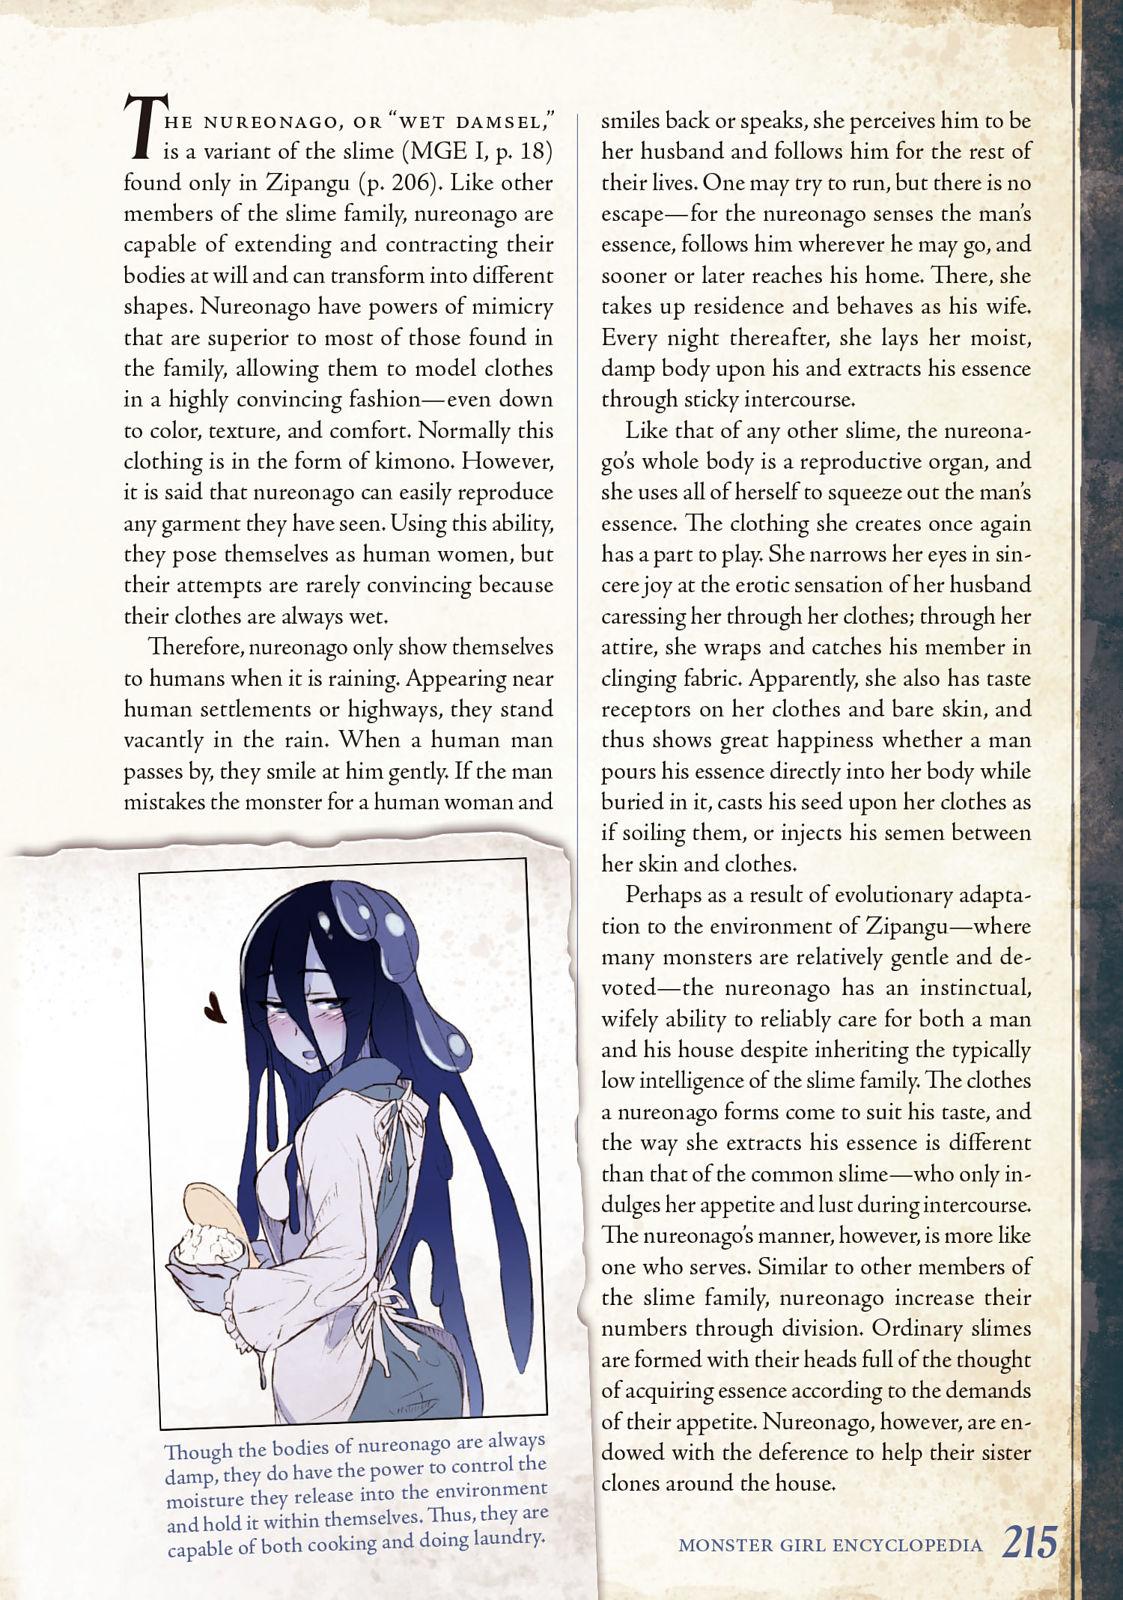 Monster Girl Encyclopedia Vol. 2 215